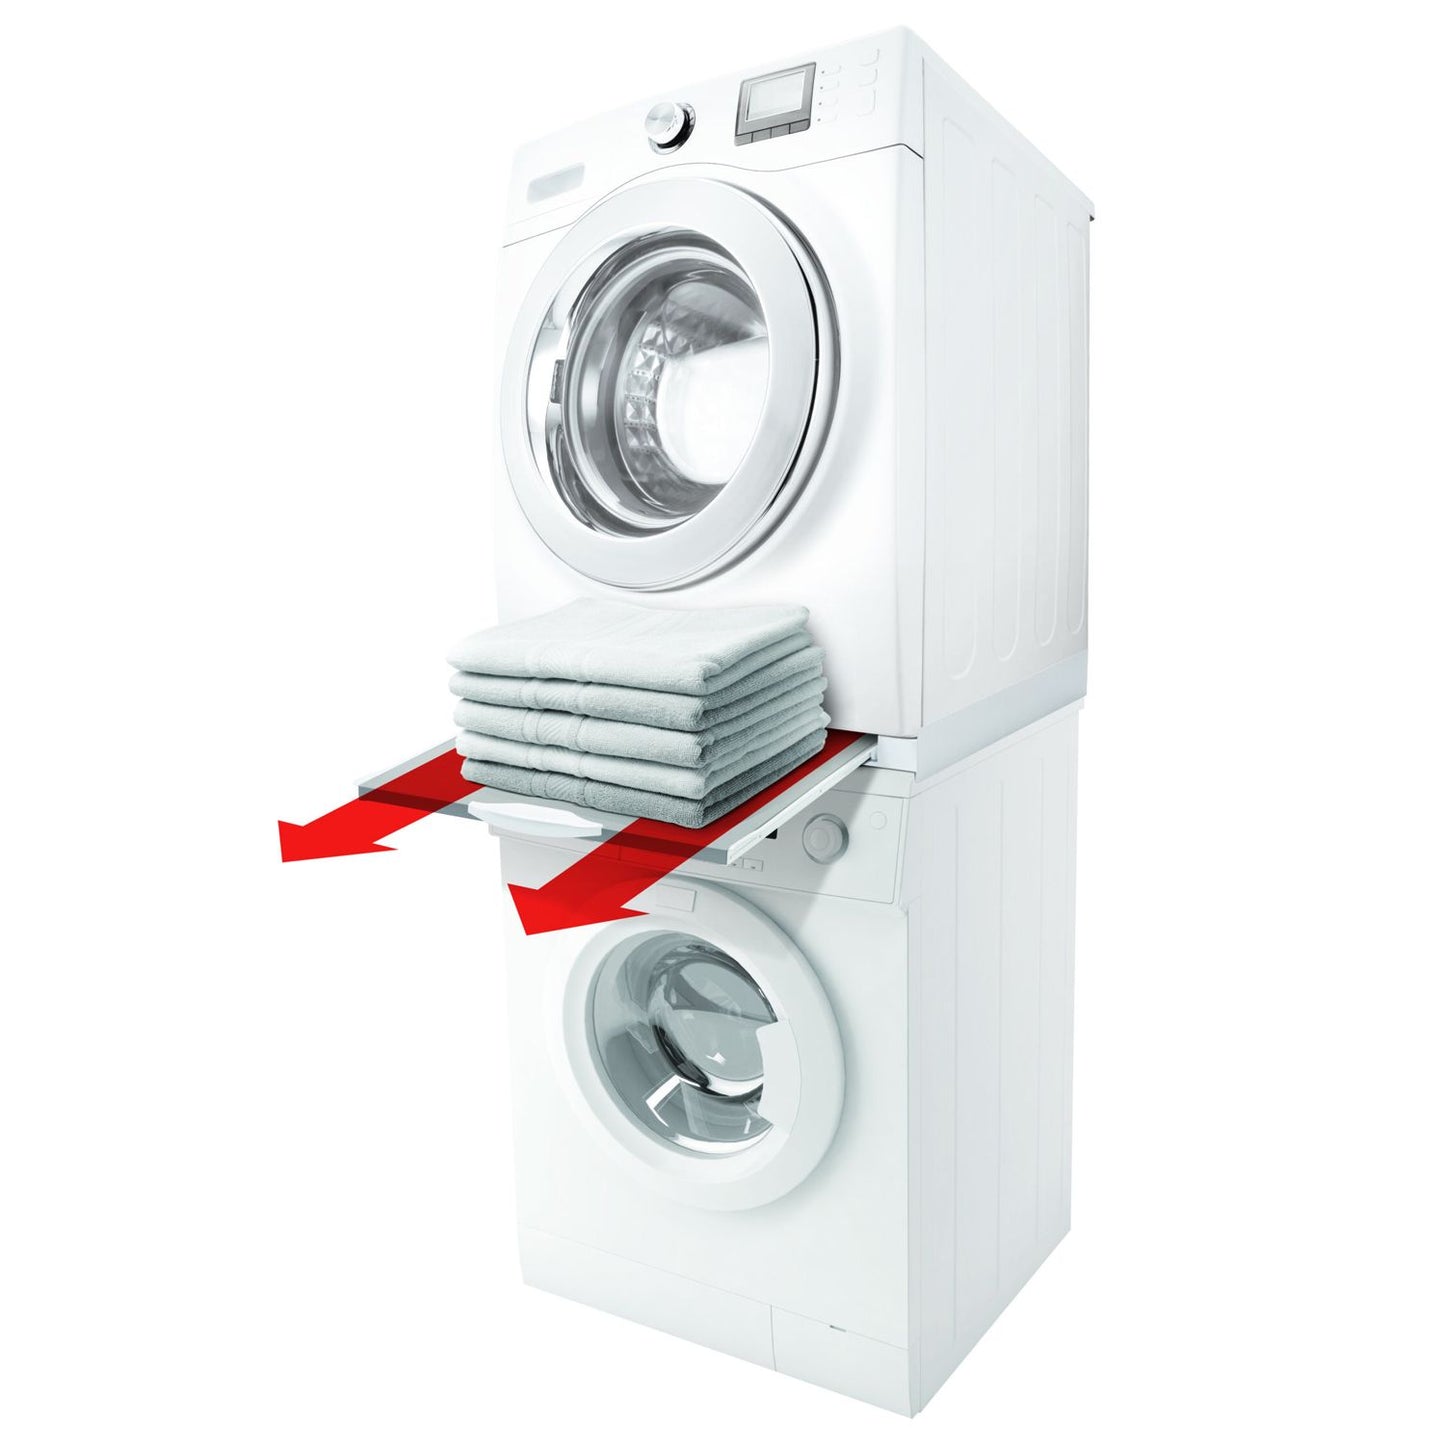 Meliconi Kit di sovrapposizione universale per lavatrice e asciugatrice con ripiano estraibile e cinghia di sicurezza inclusa, made in Italy